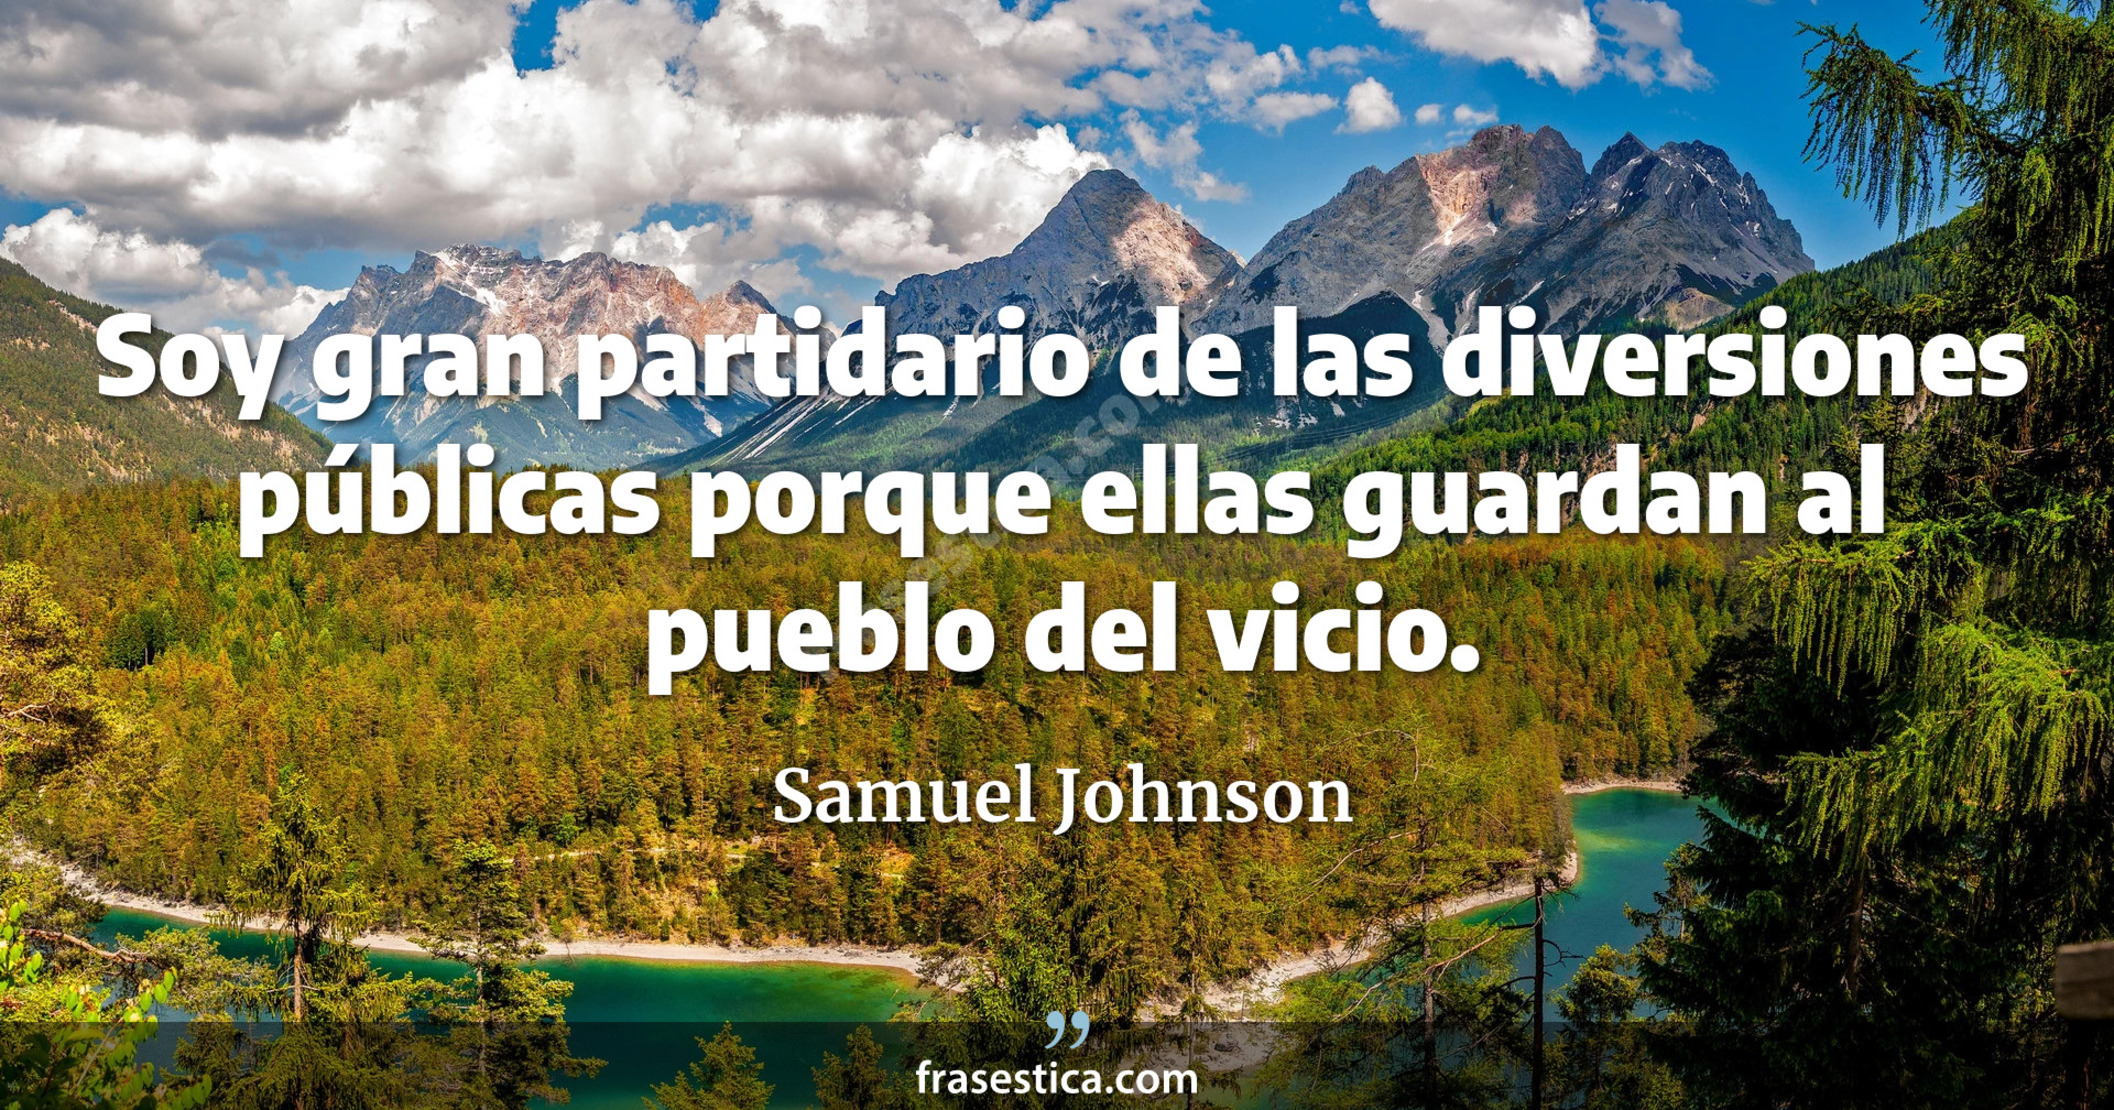 Soy gran partidario de las diversiones públicas porque ellas guardan al pueblo del vicio. - Samuel Johnson